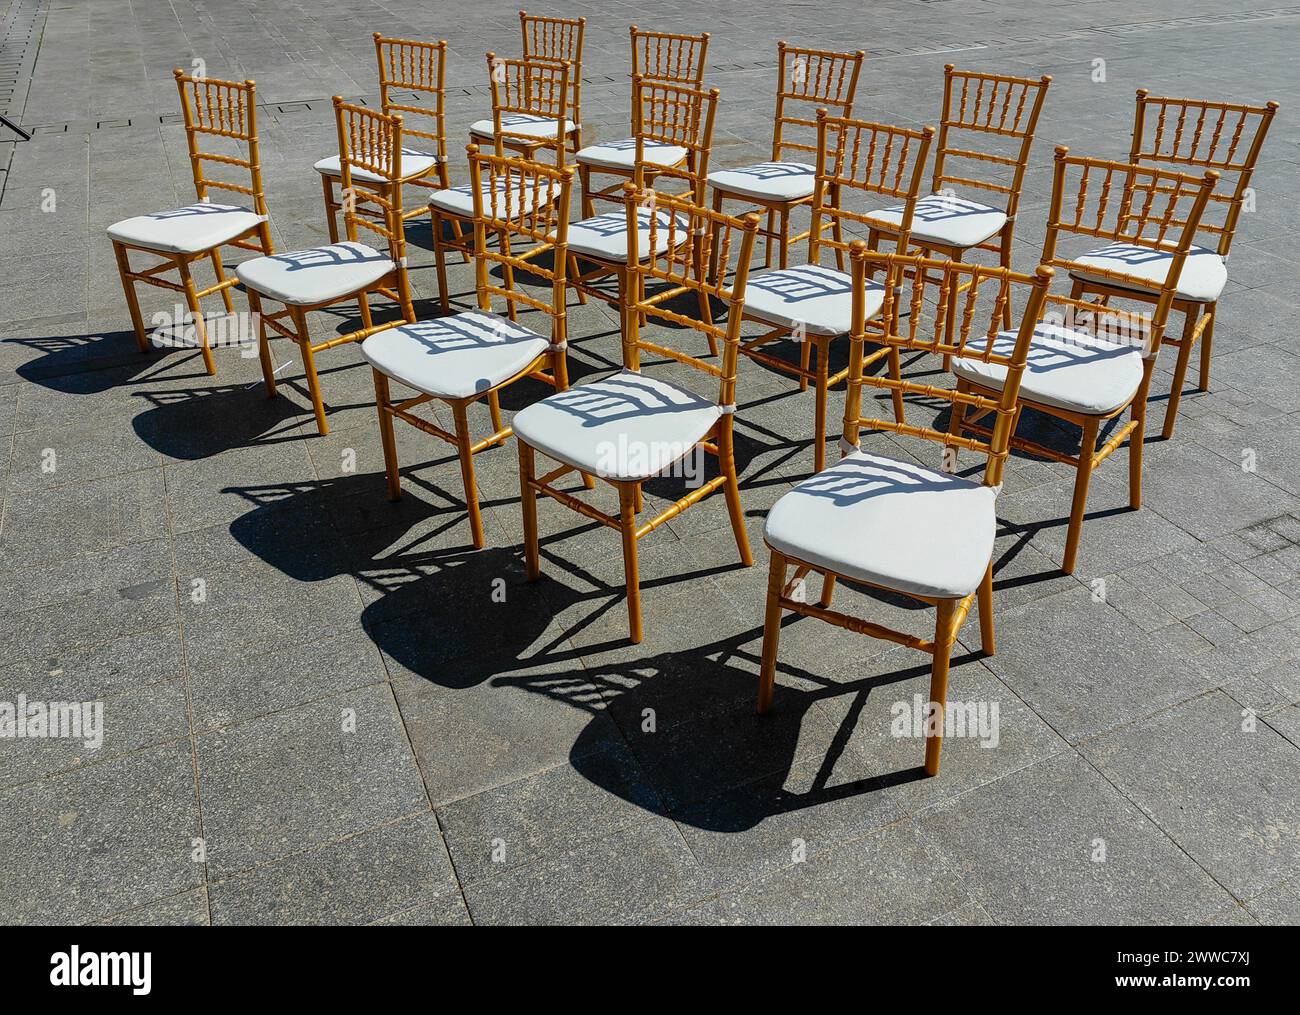 Sièges ensoleillés. Un défilé de 15 chaises sur la place de la ville. Lumière et ombre. Motif et texture. Banque D'Images